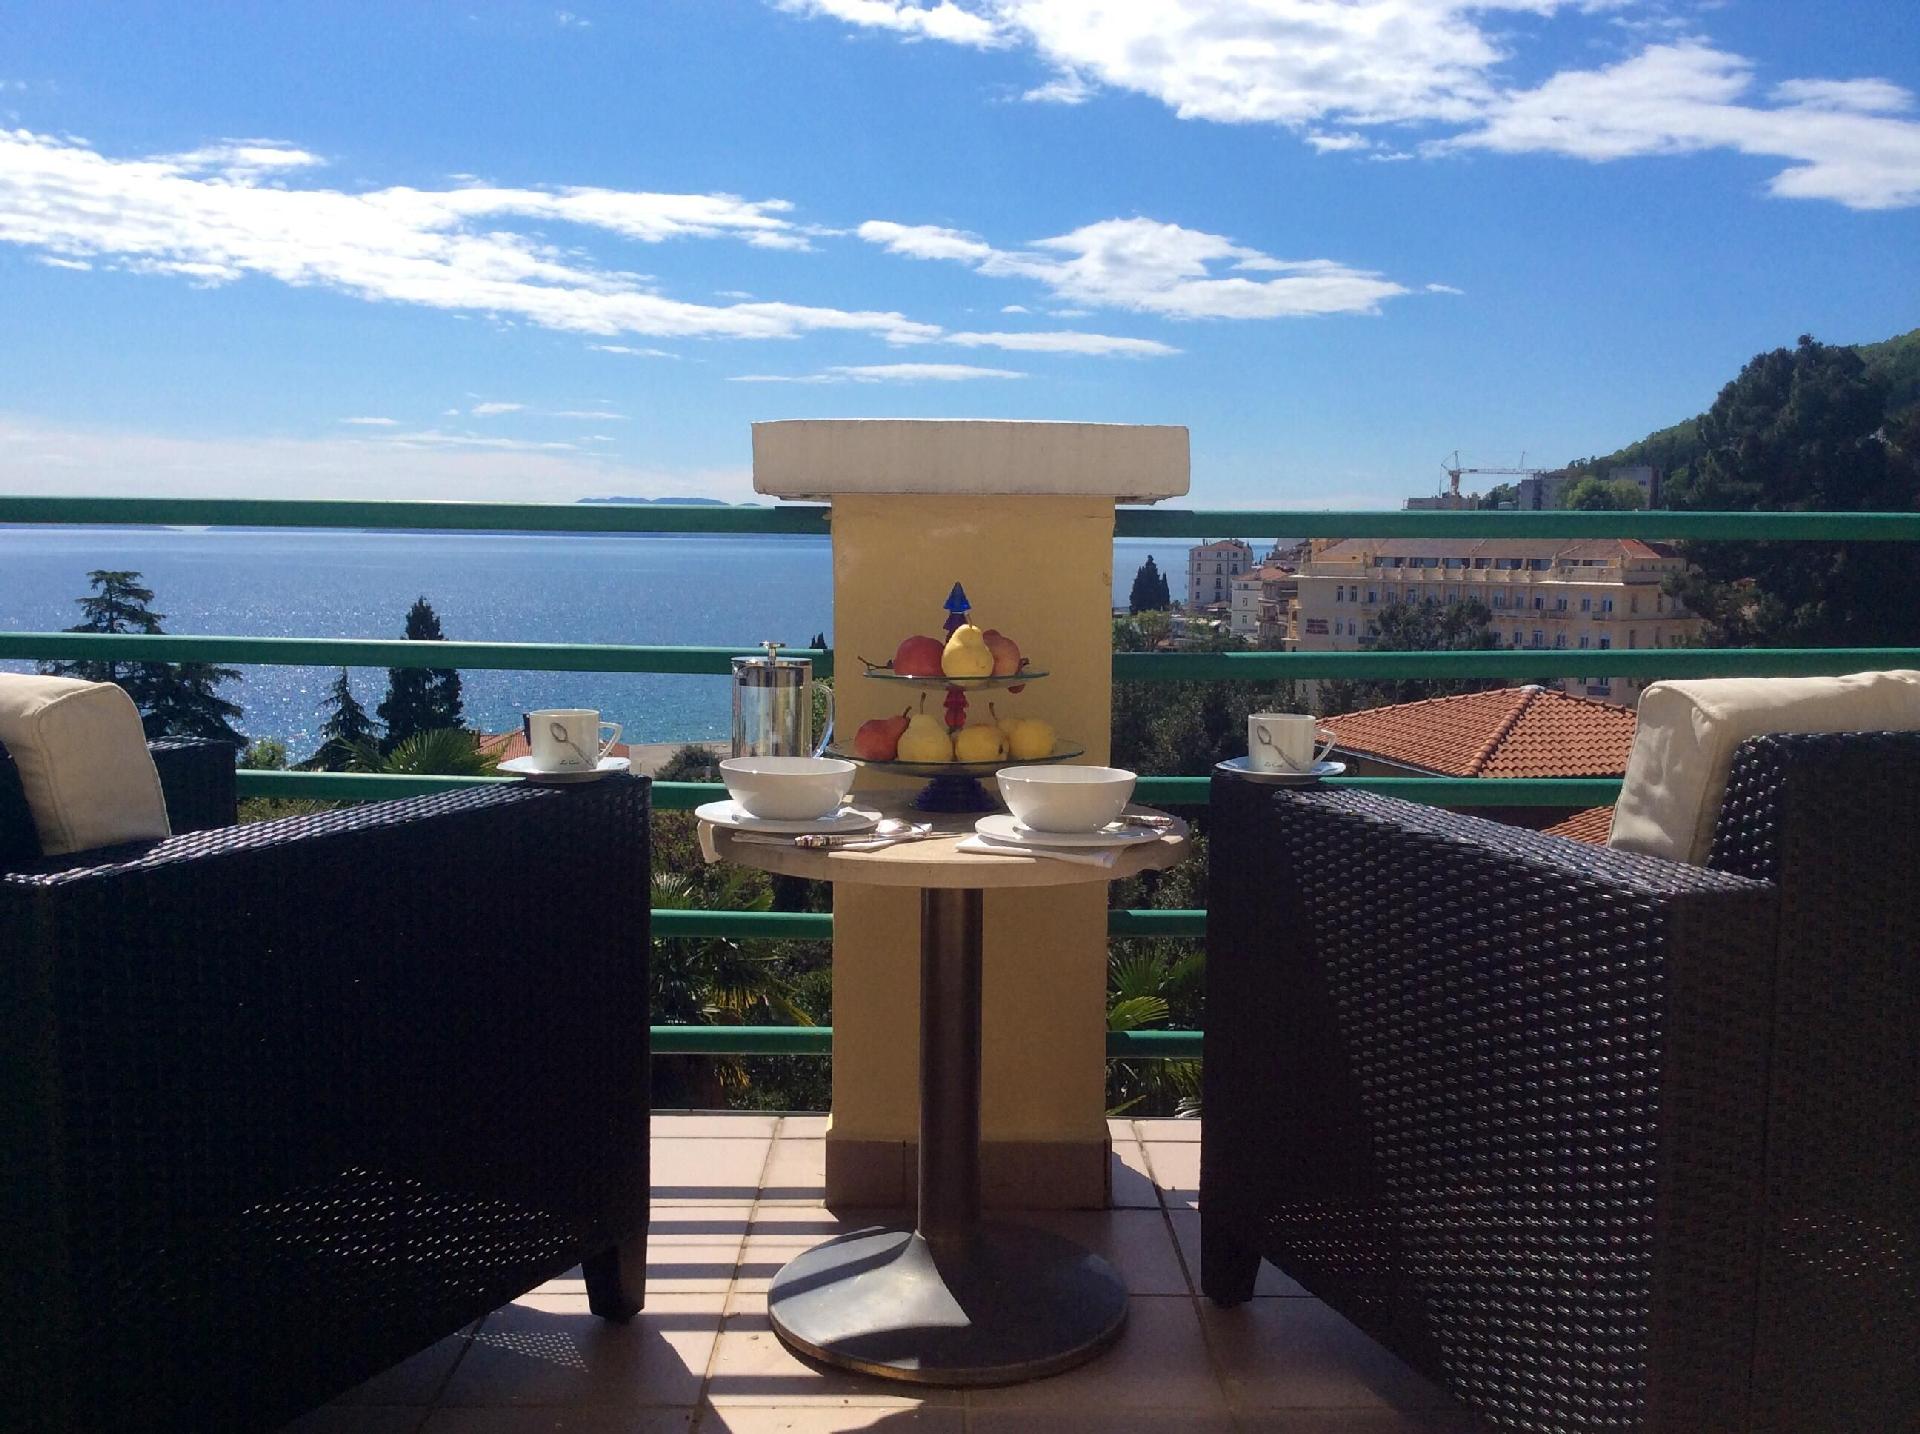 Ferienwohnung in einer Villa mit Terrasse und Meer Ferienhaus in Kroatien